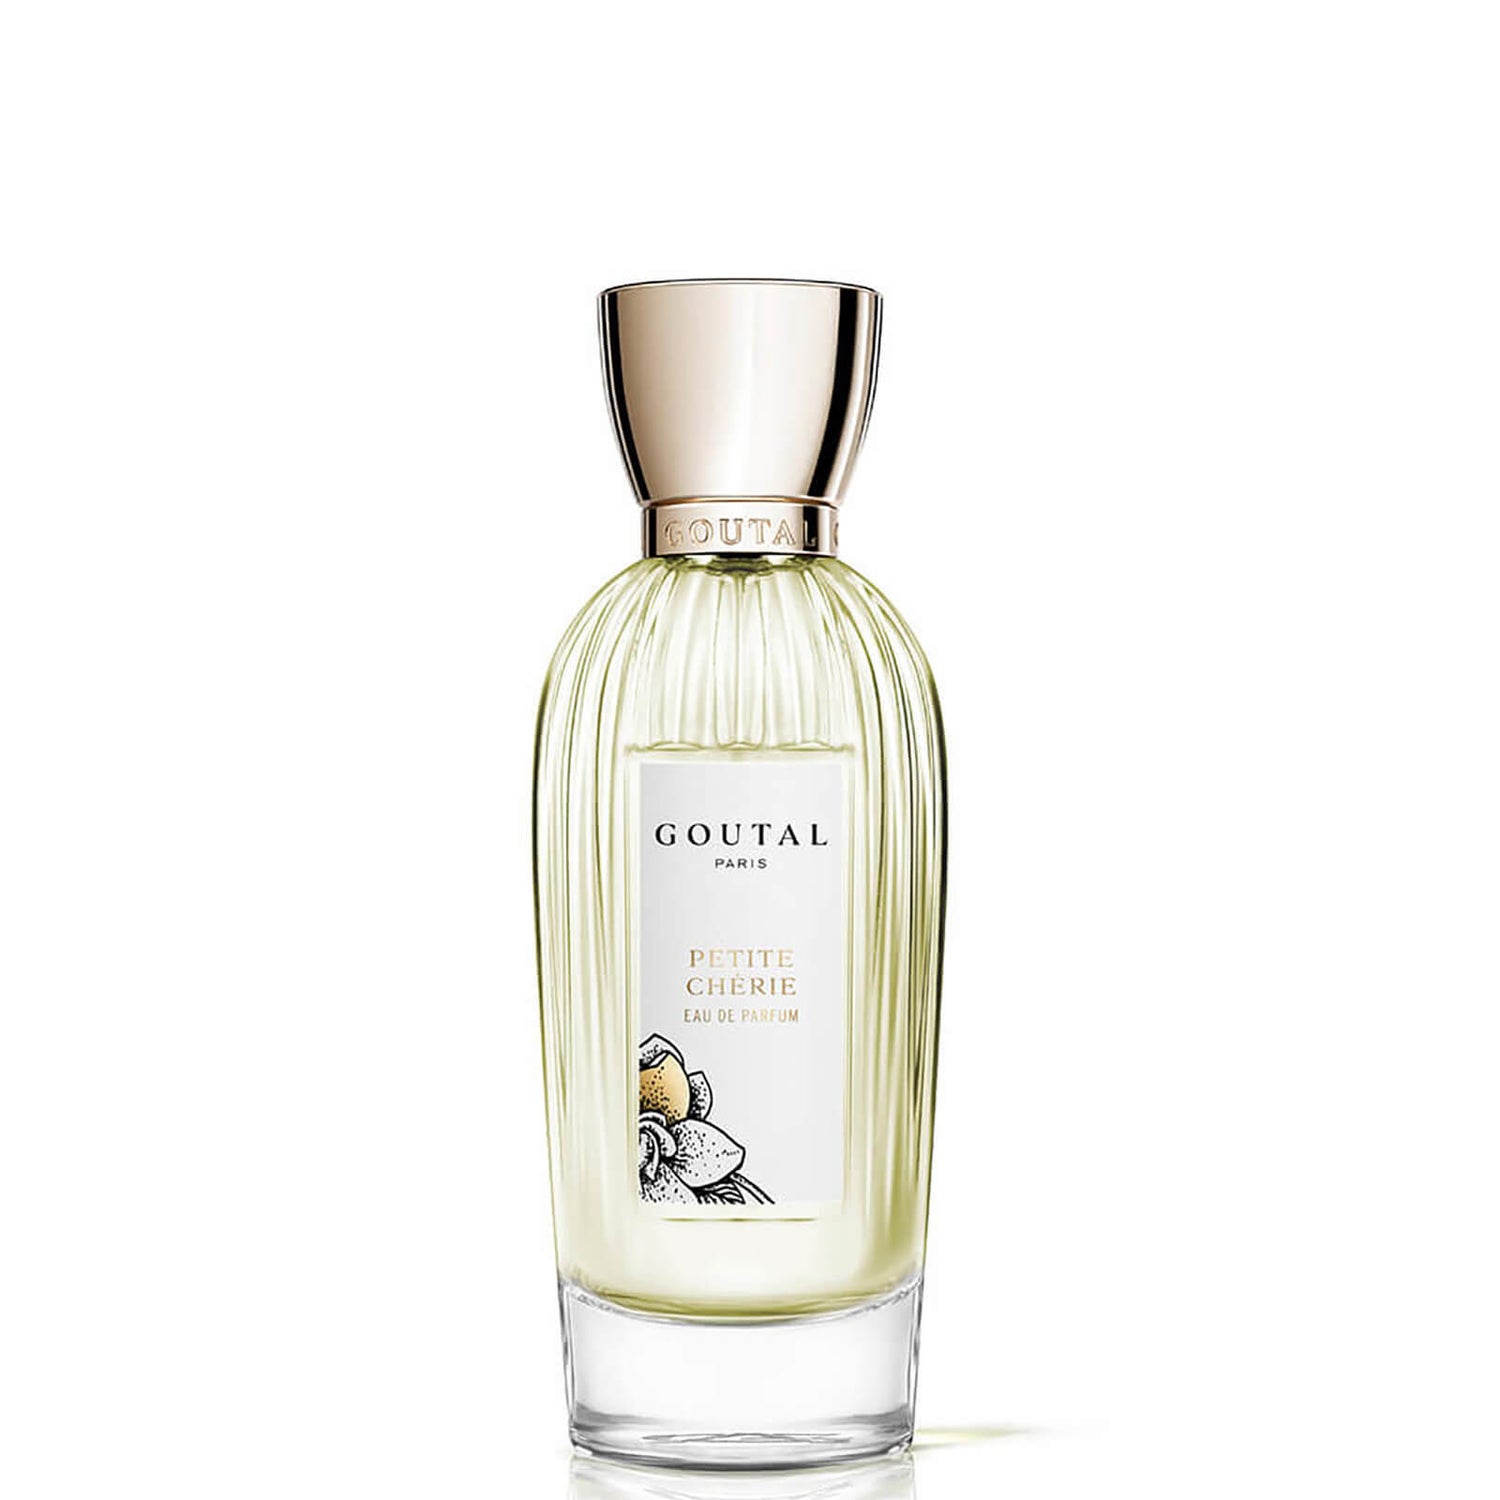 Goutal Petite Cherie Eau de Parfum - 50ml